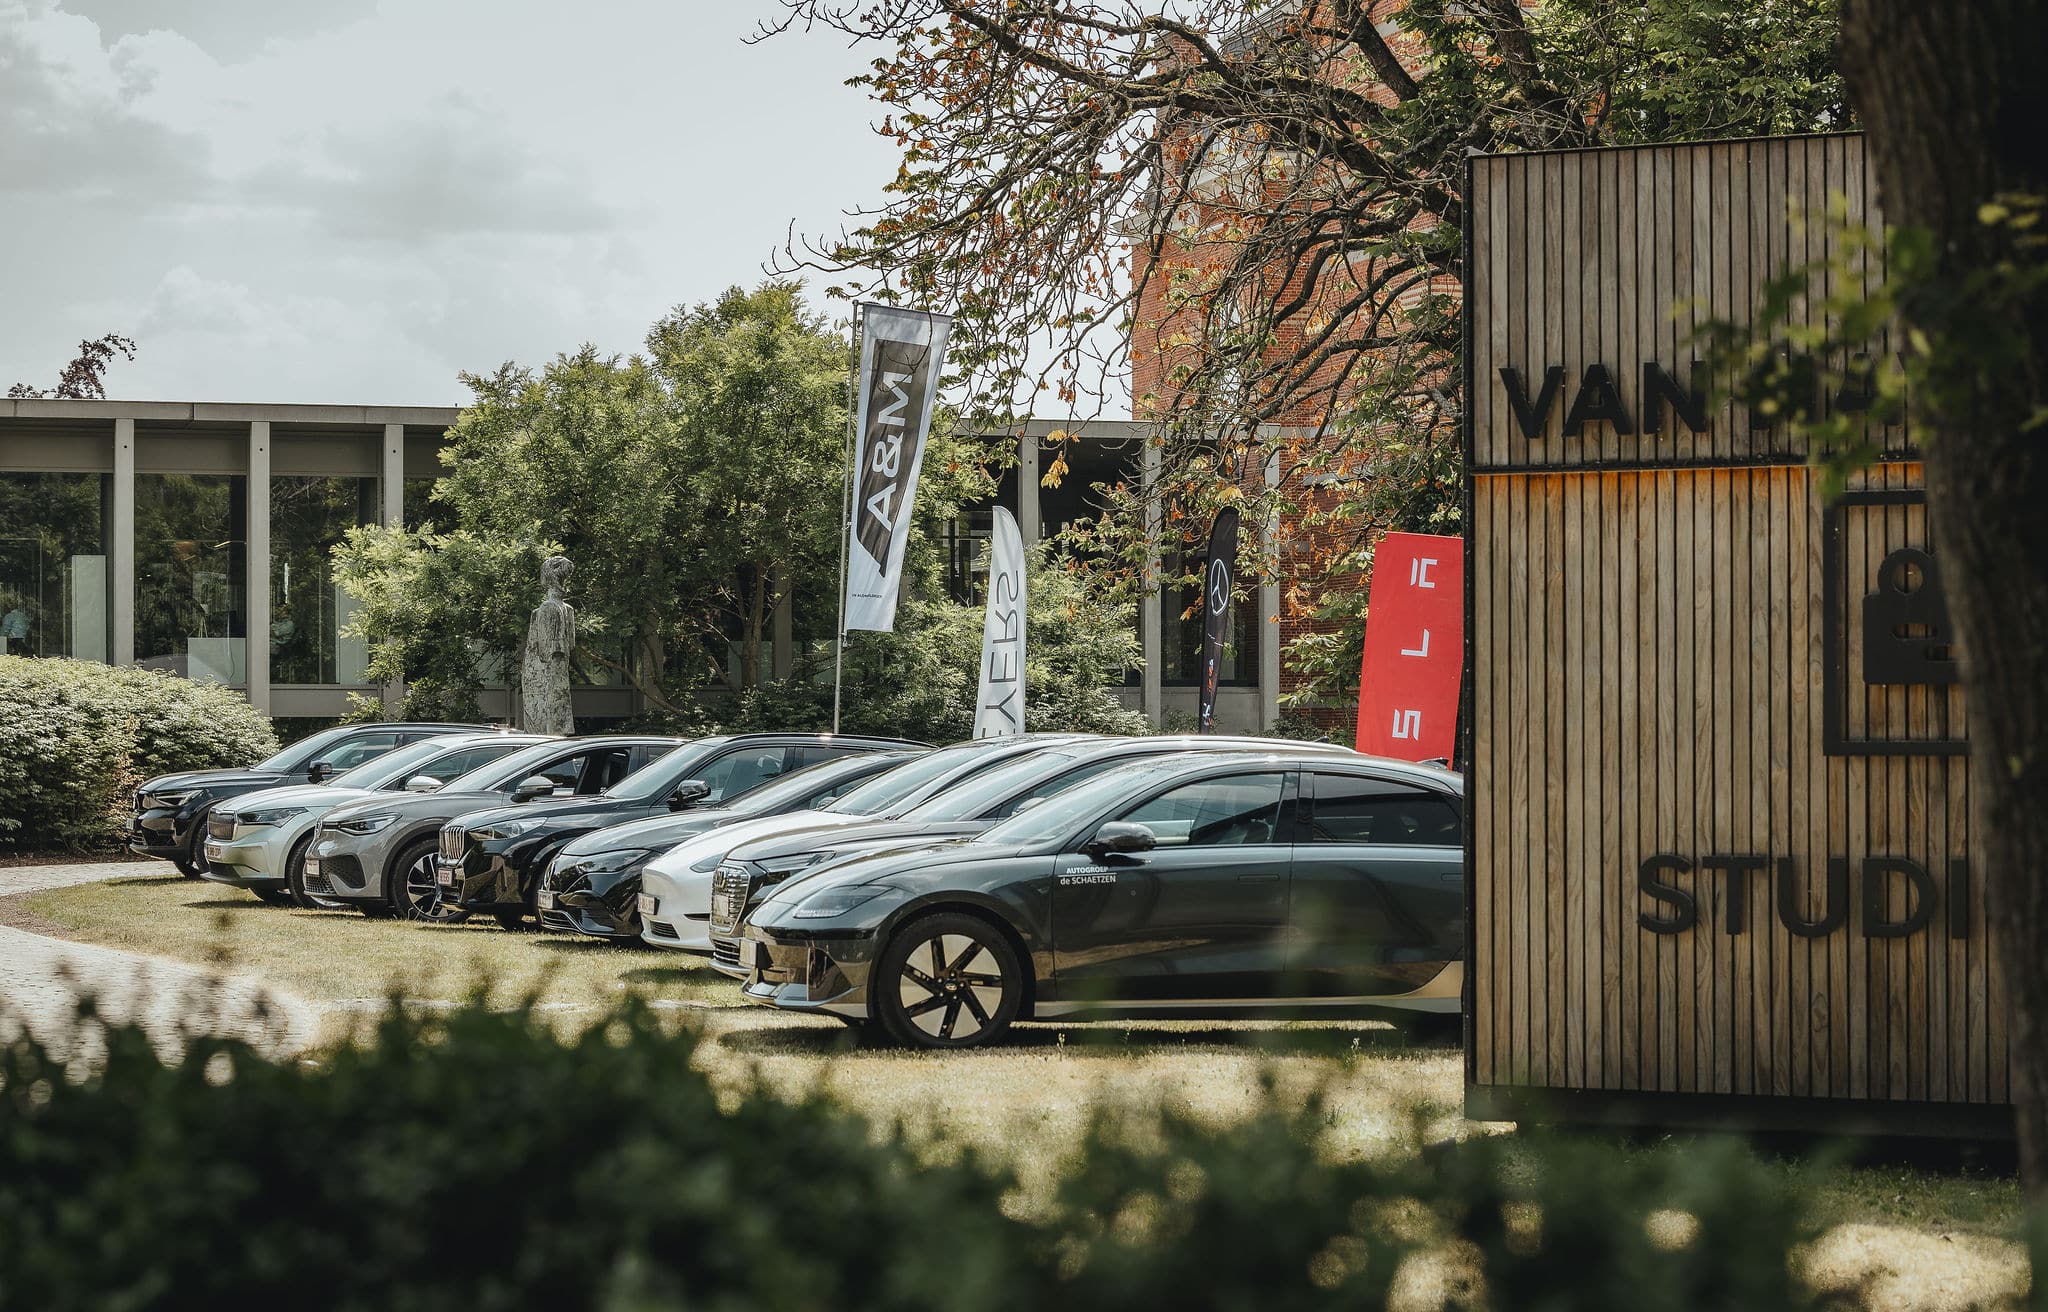 De elektrische wagens van Van Havermaet staan langs elkaar op de parking van Van Havermaet.